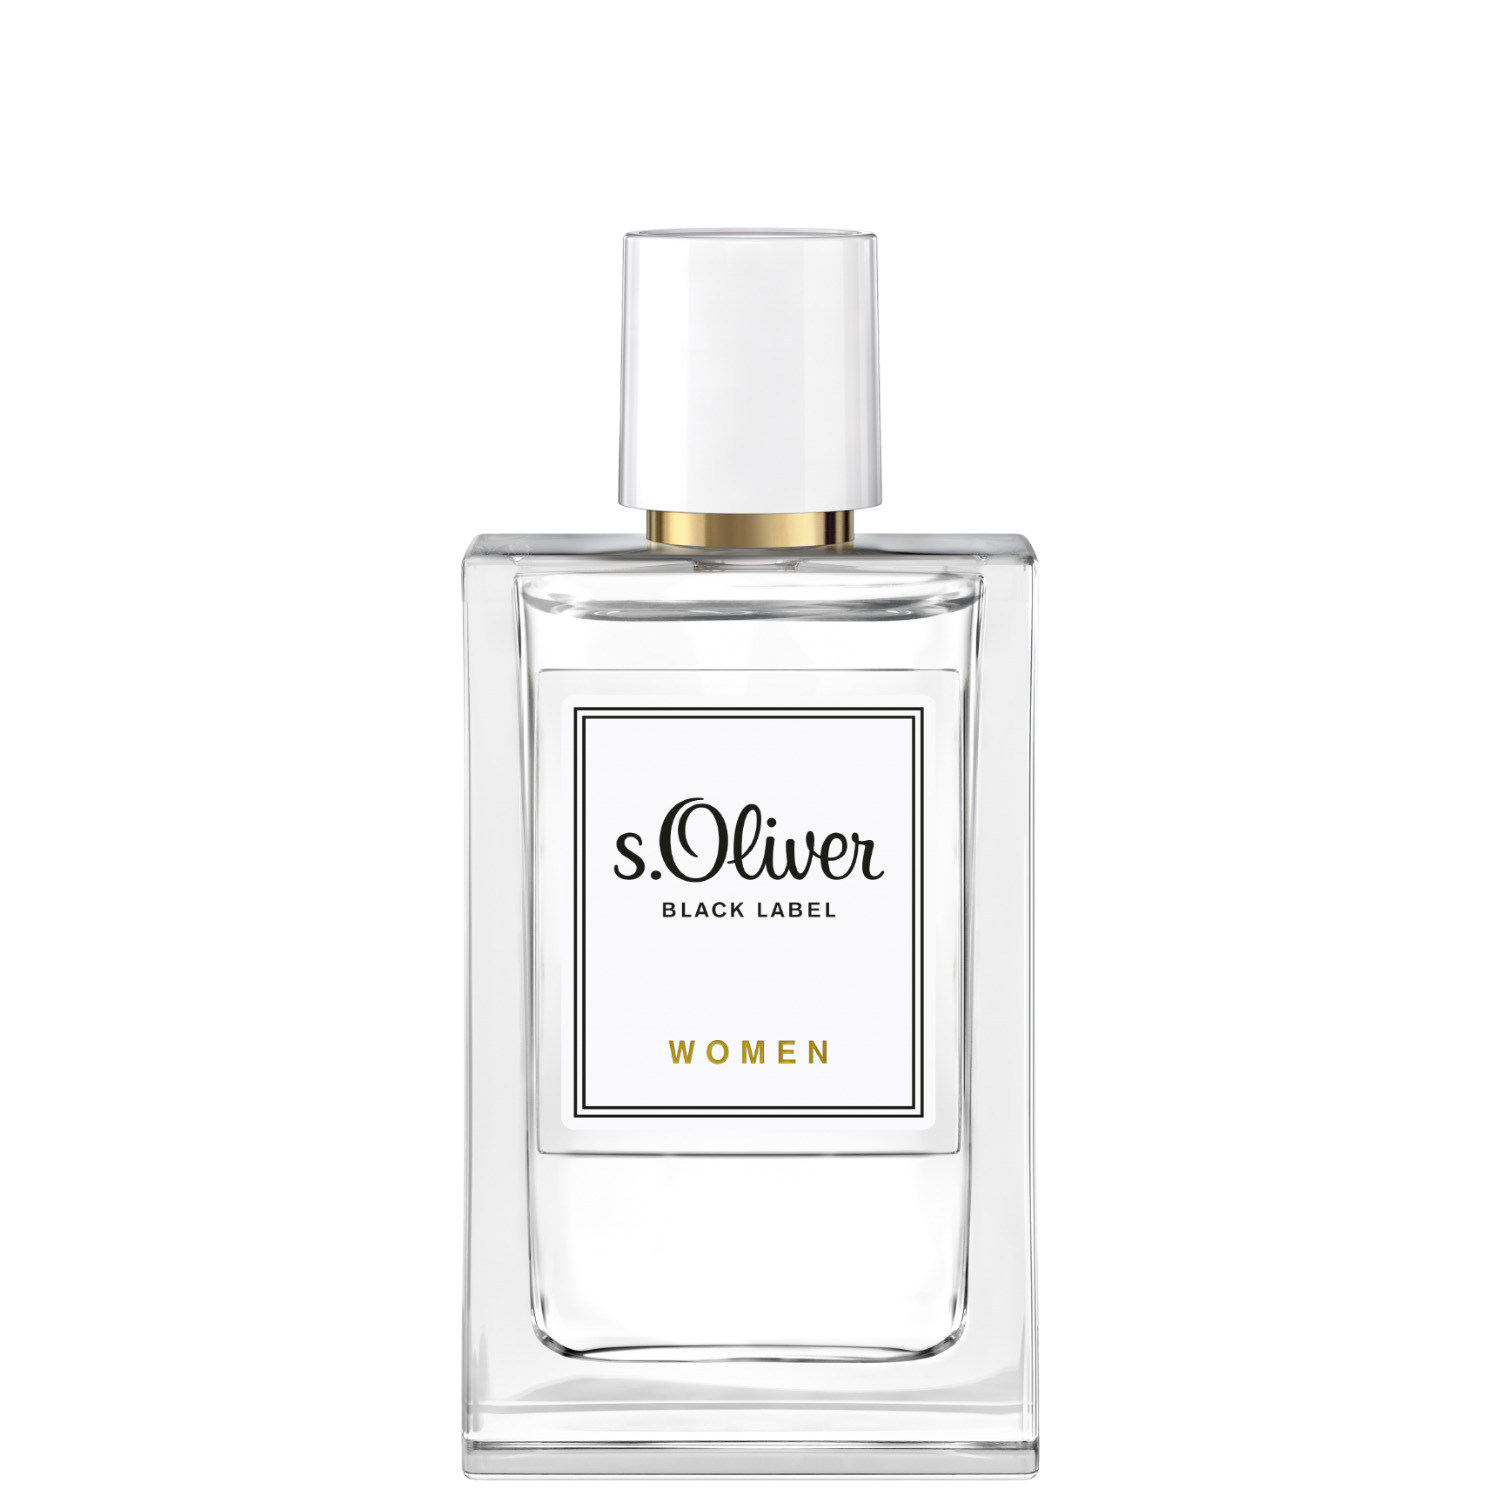 S.Oliver Black Label Women Eau de Parfum 30ml